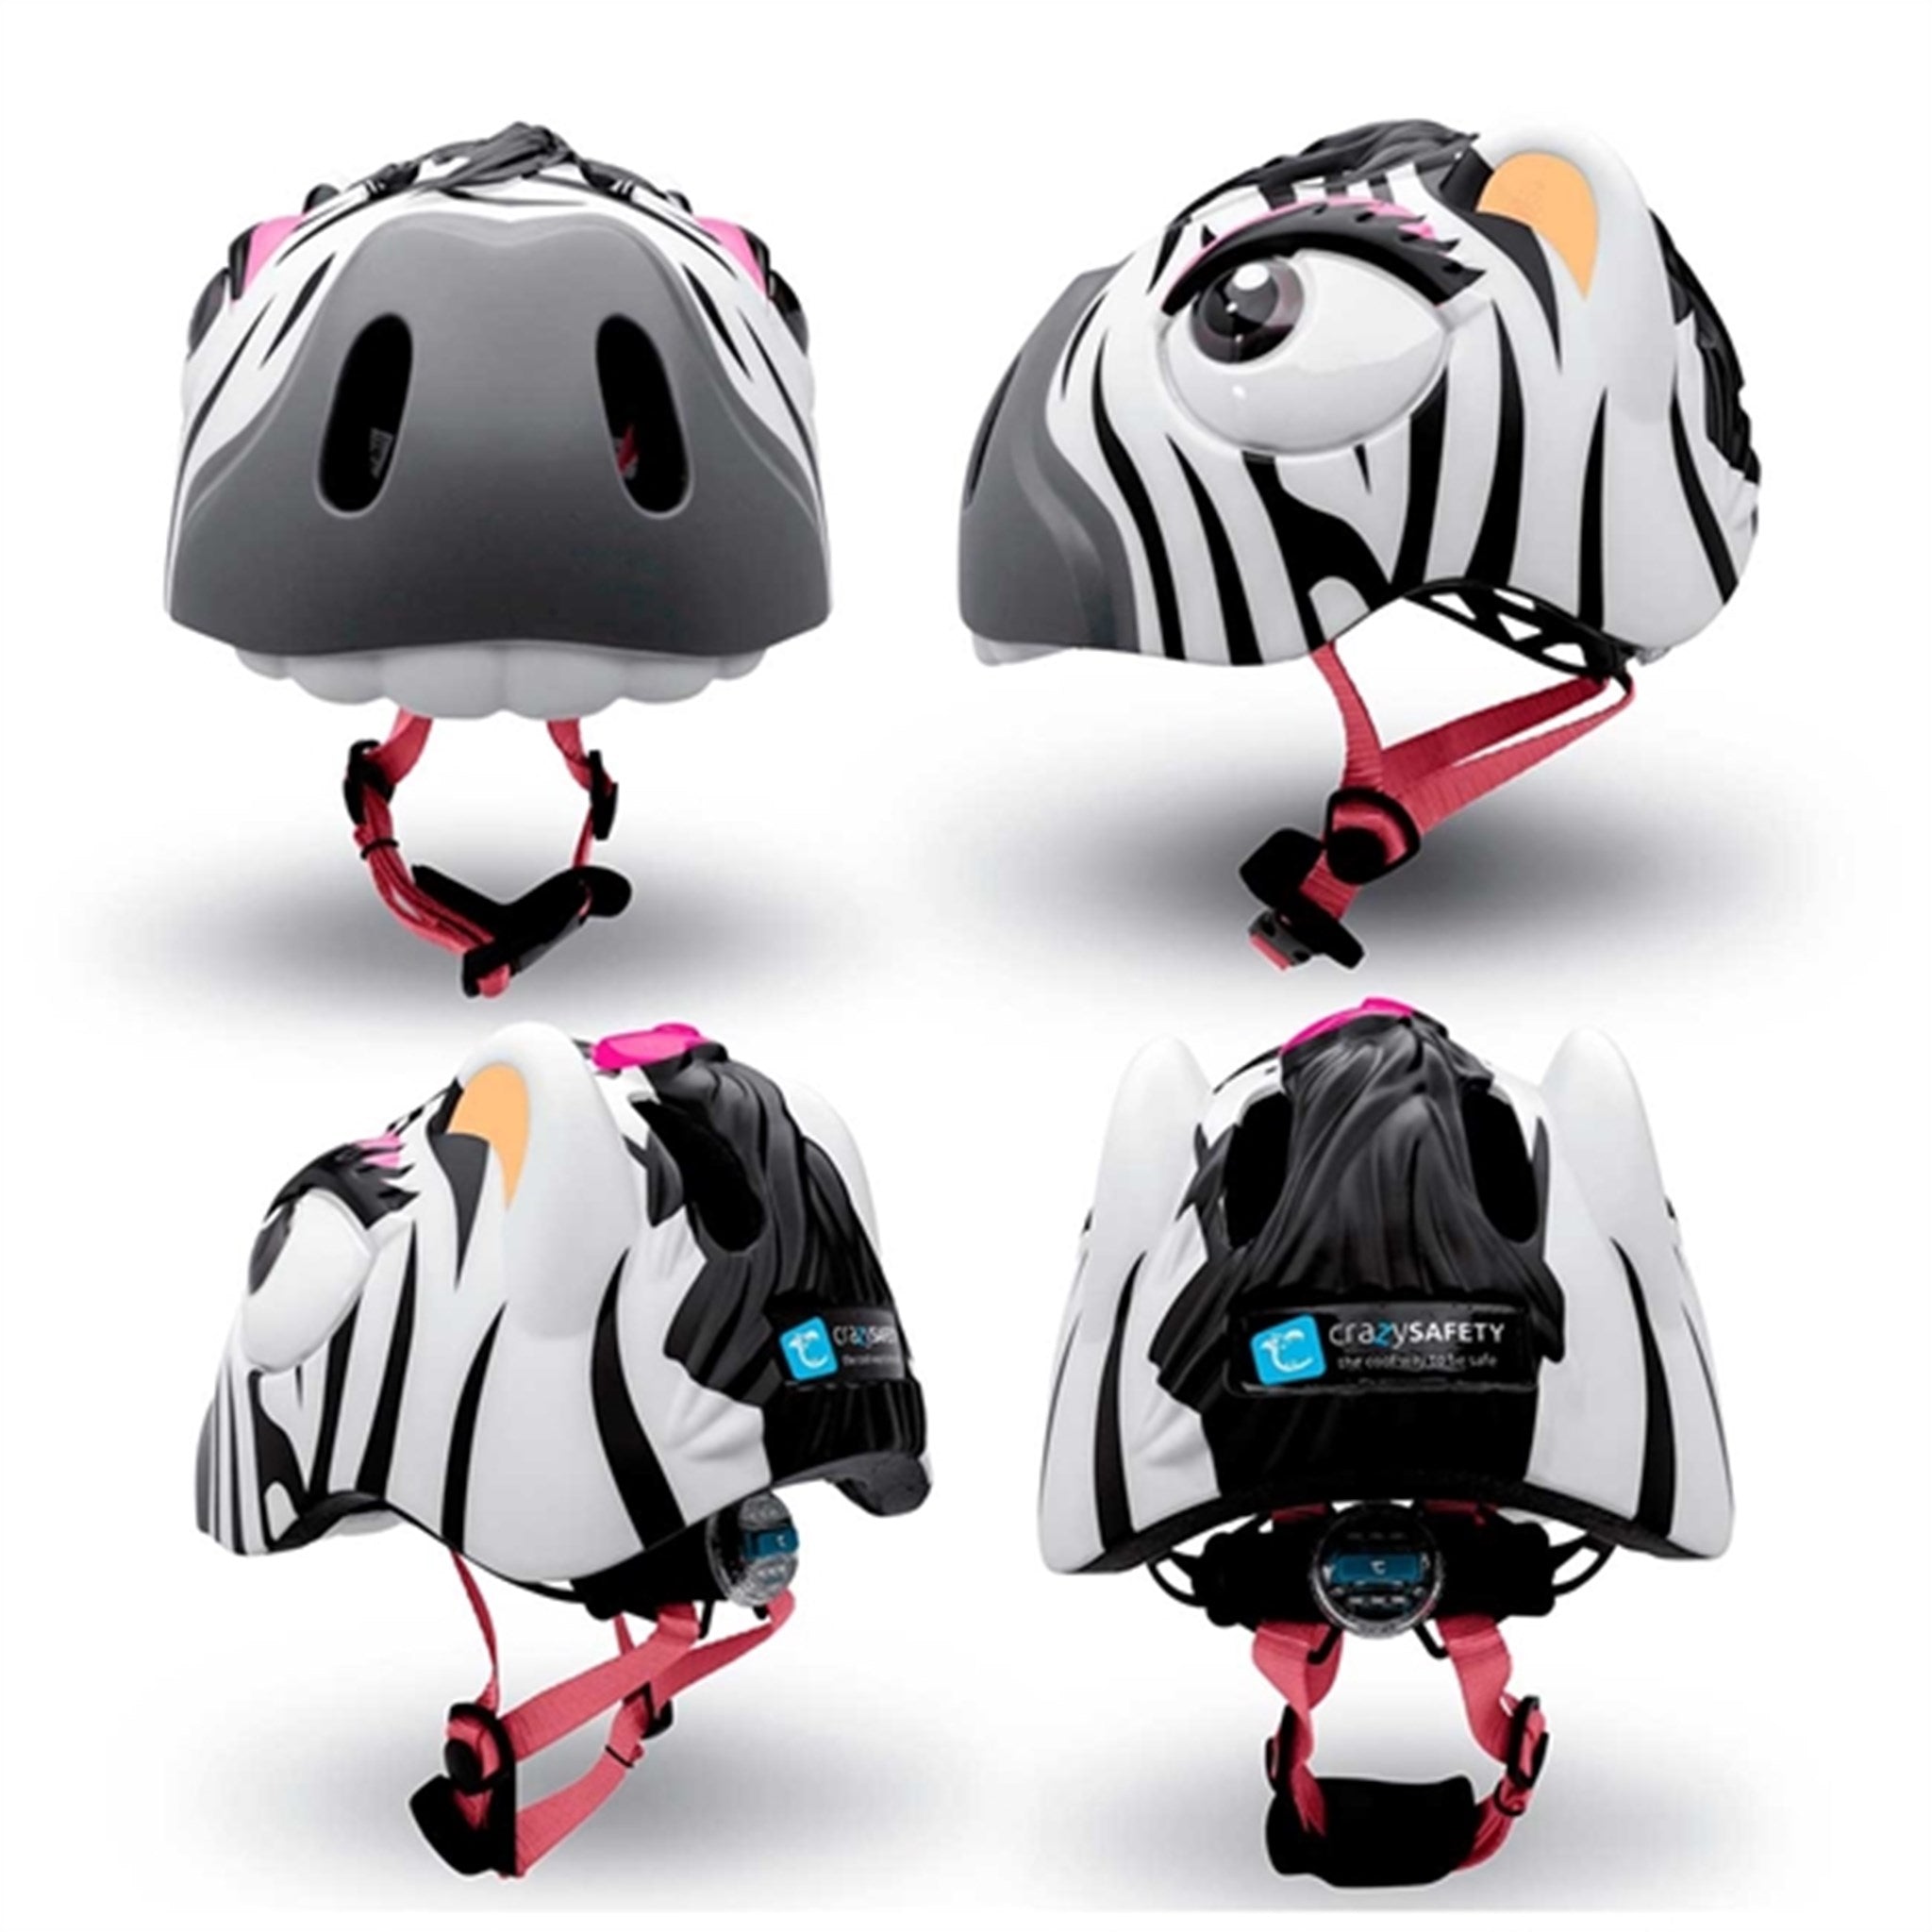 Crazy Safety Zebra Bicycle Helmet Black/White 5